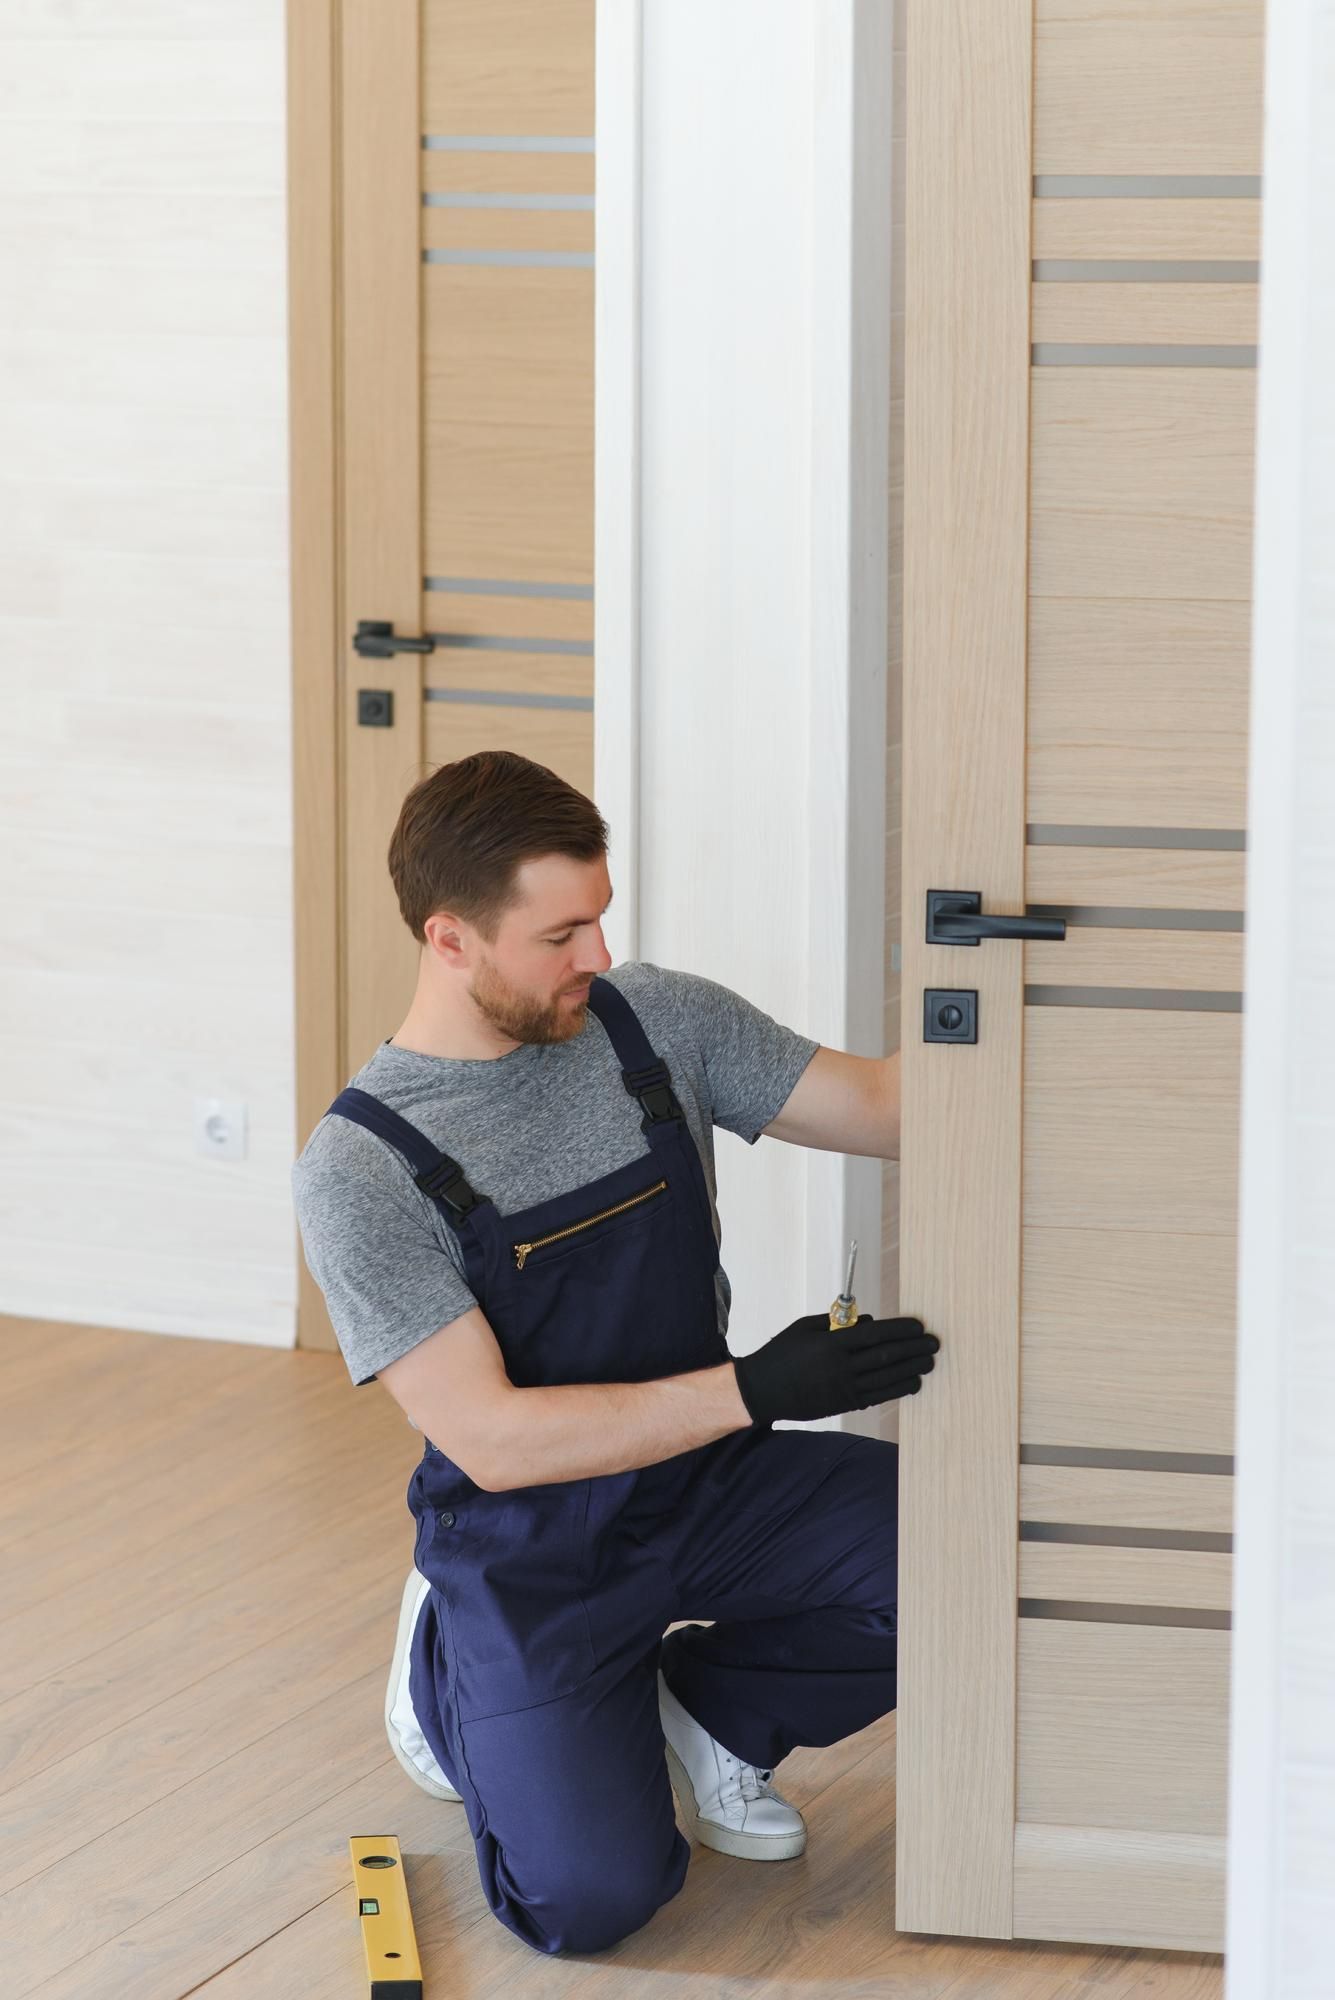 a man is installing a door in a room